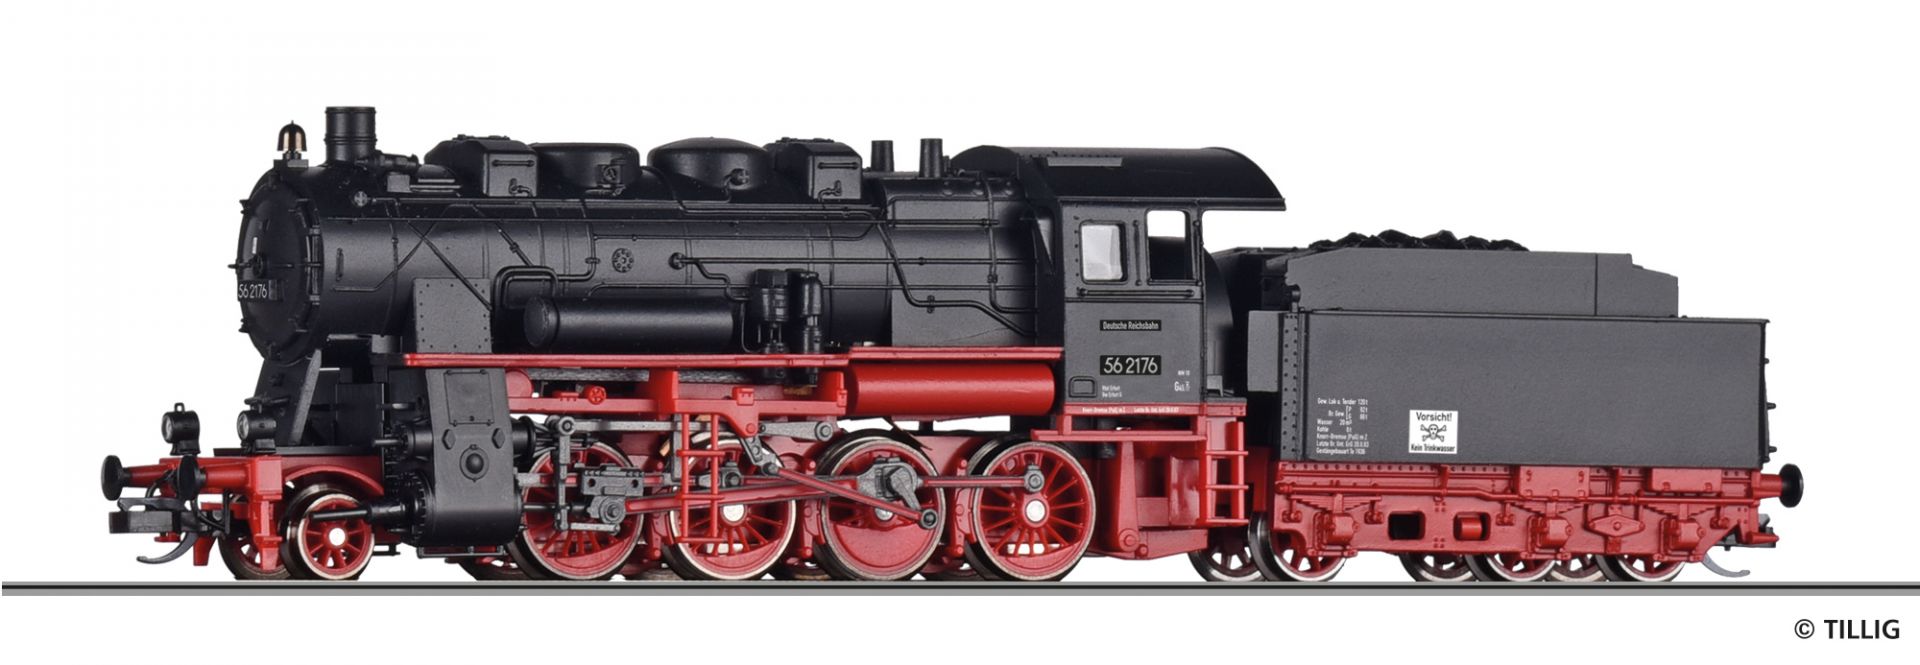 02236 | Dampflokomotive DR